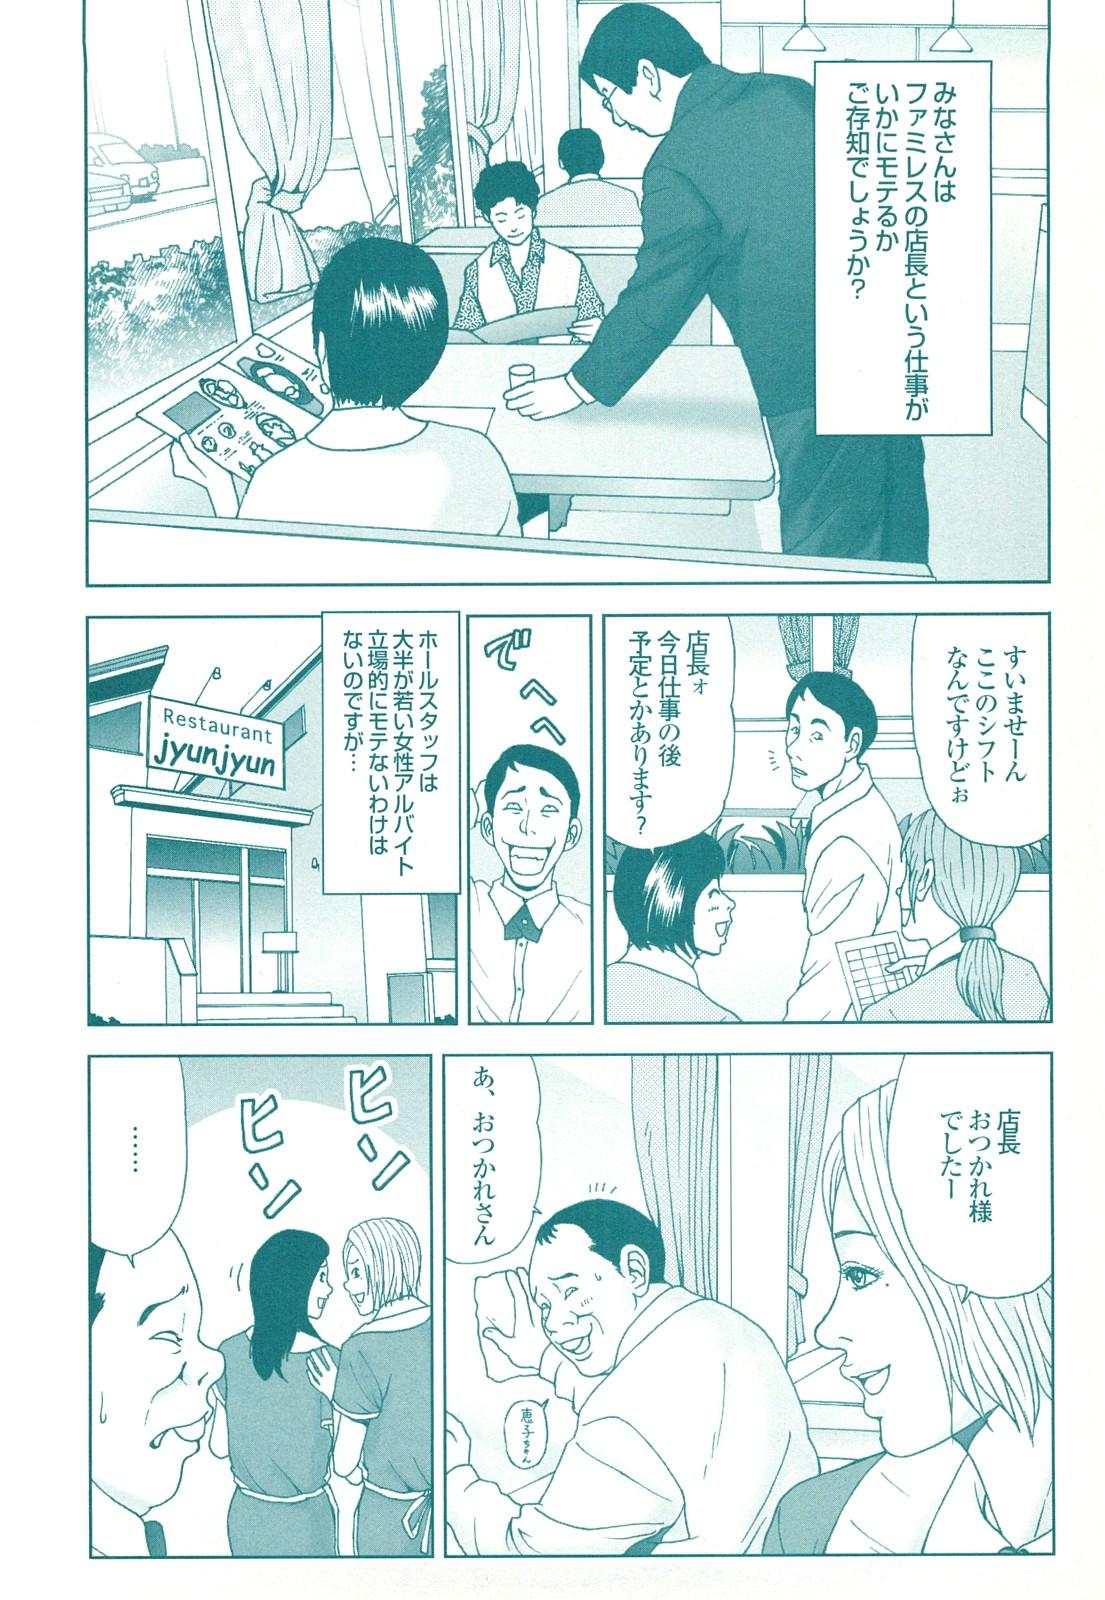 コミック裏モノJAPAN Vol.18 今井のりたつスペシャル号 177